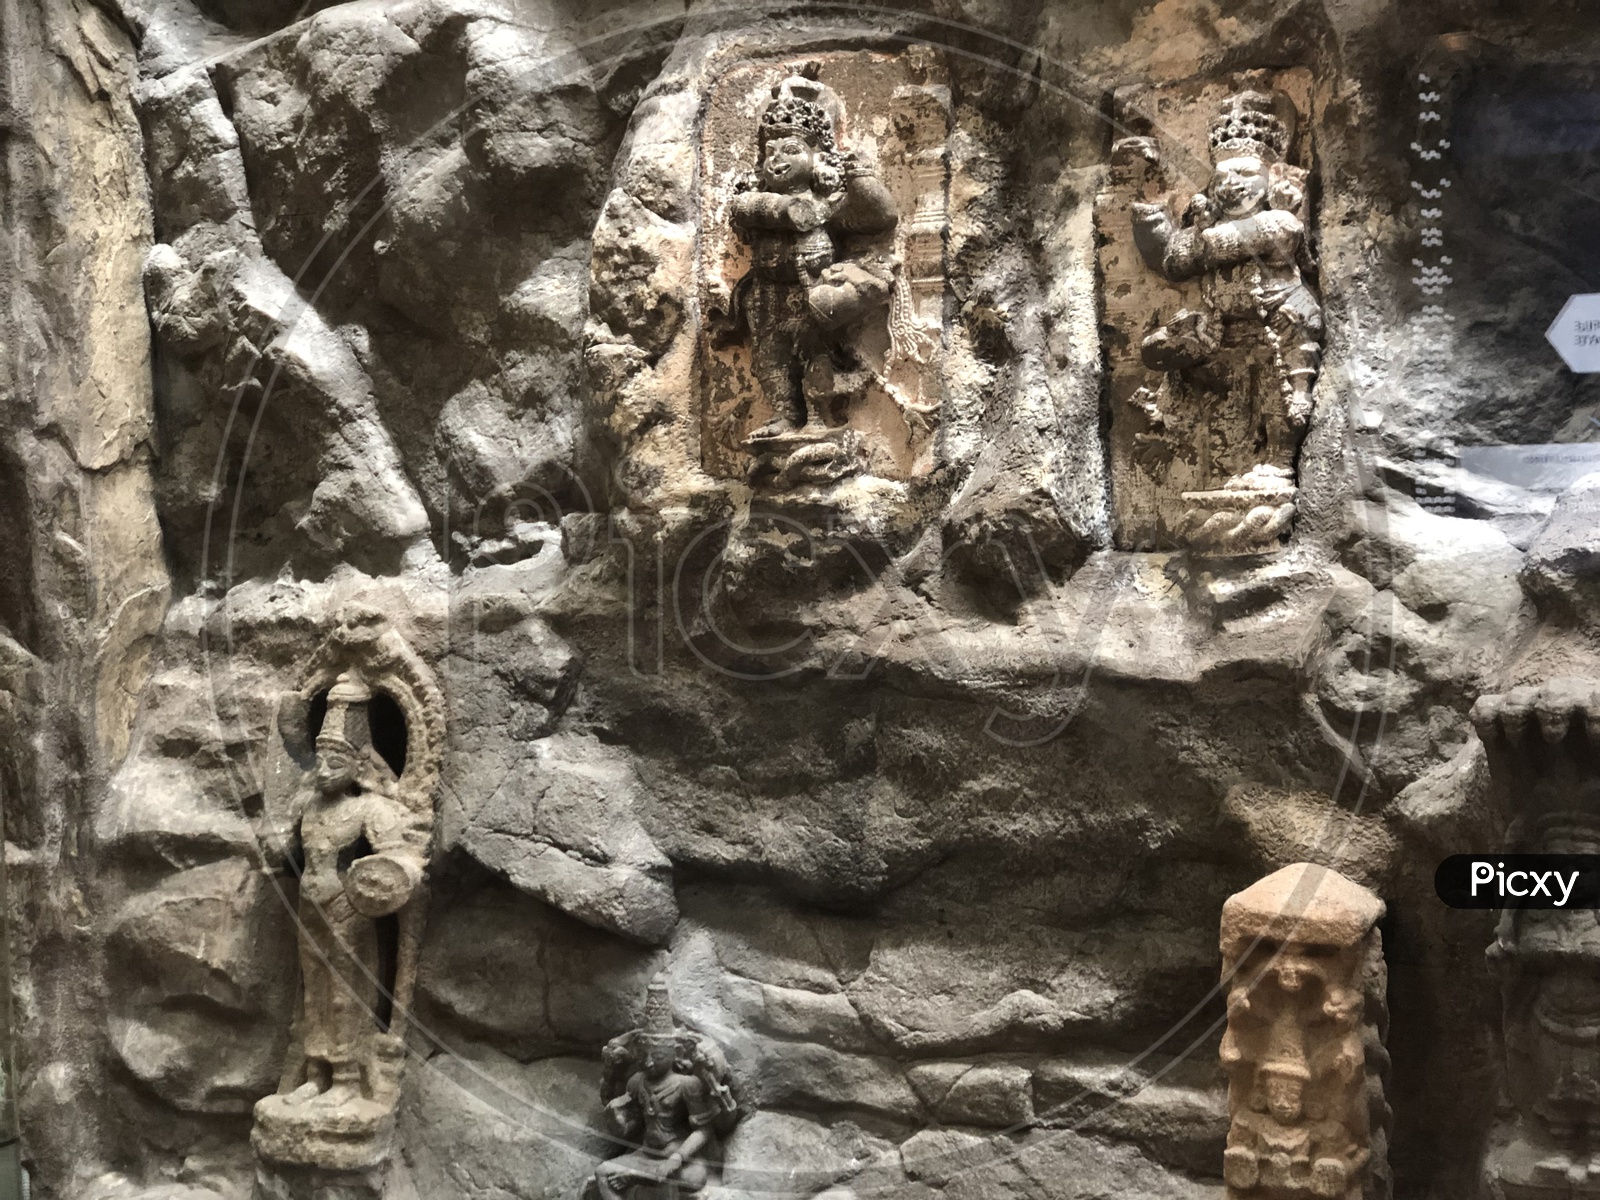 Hindu God Sculptures On Fabricated Rock At Jaya He GVK New Museum